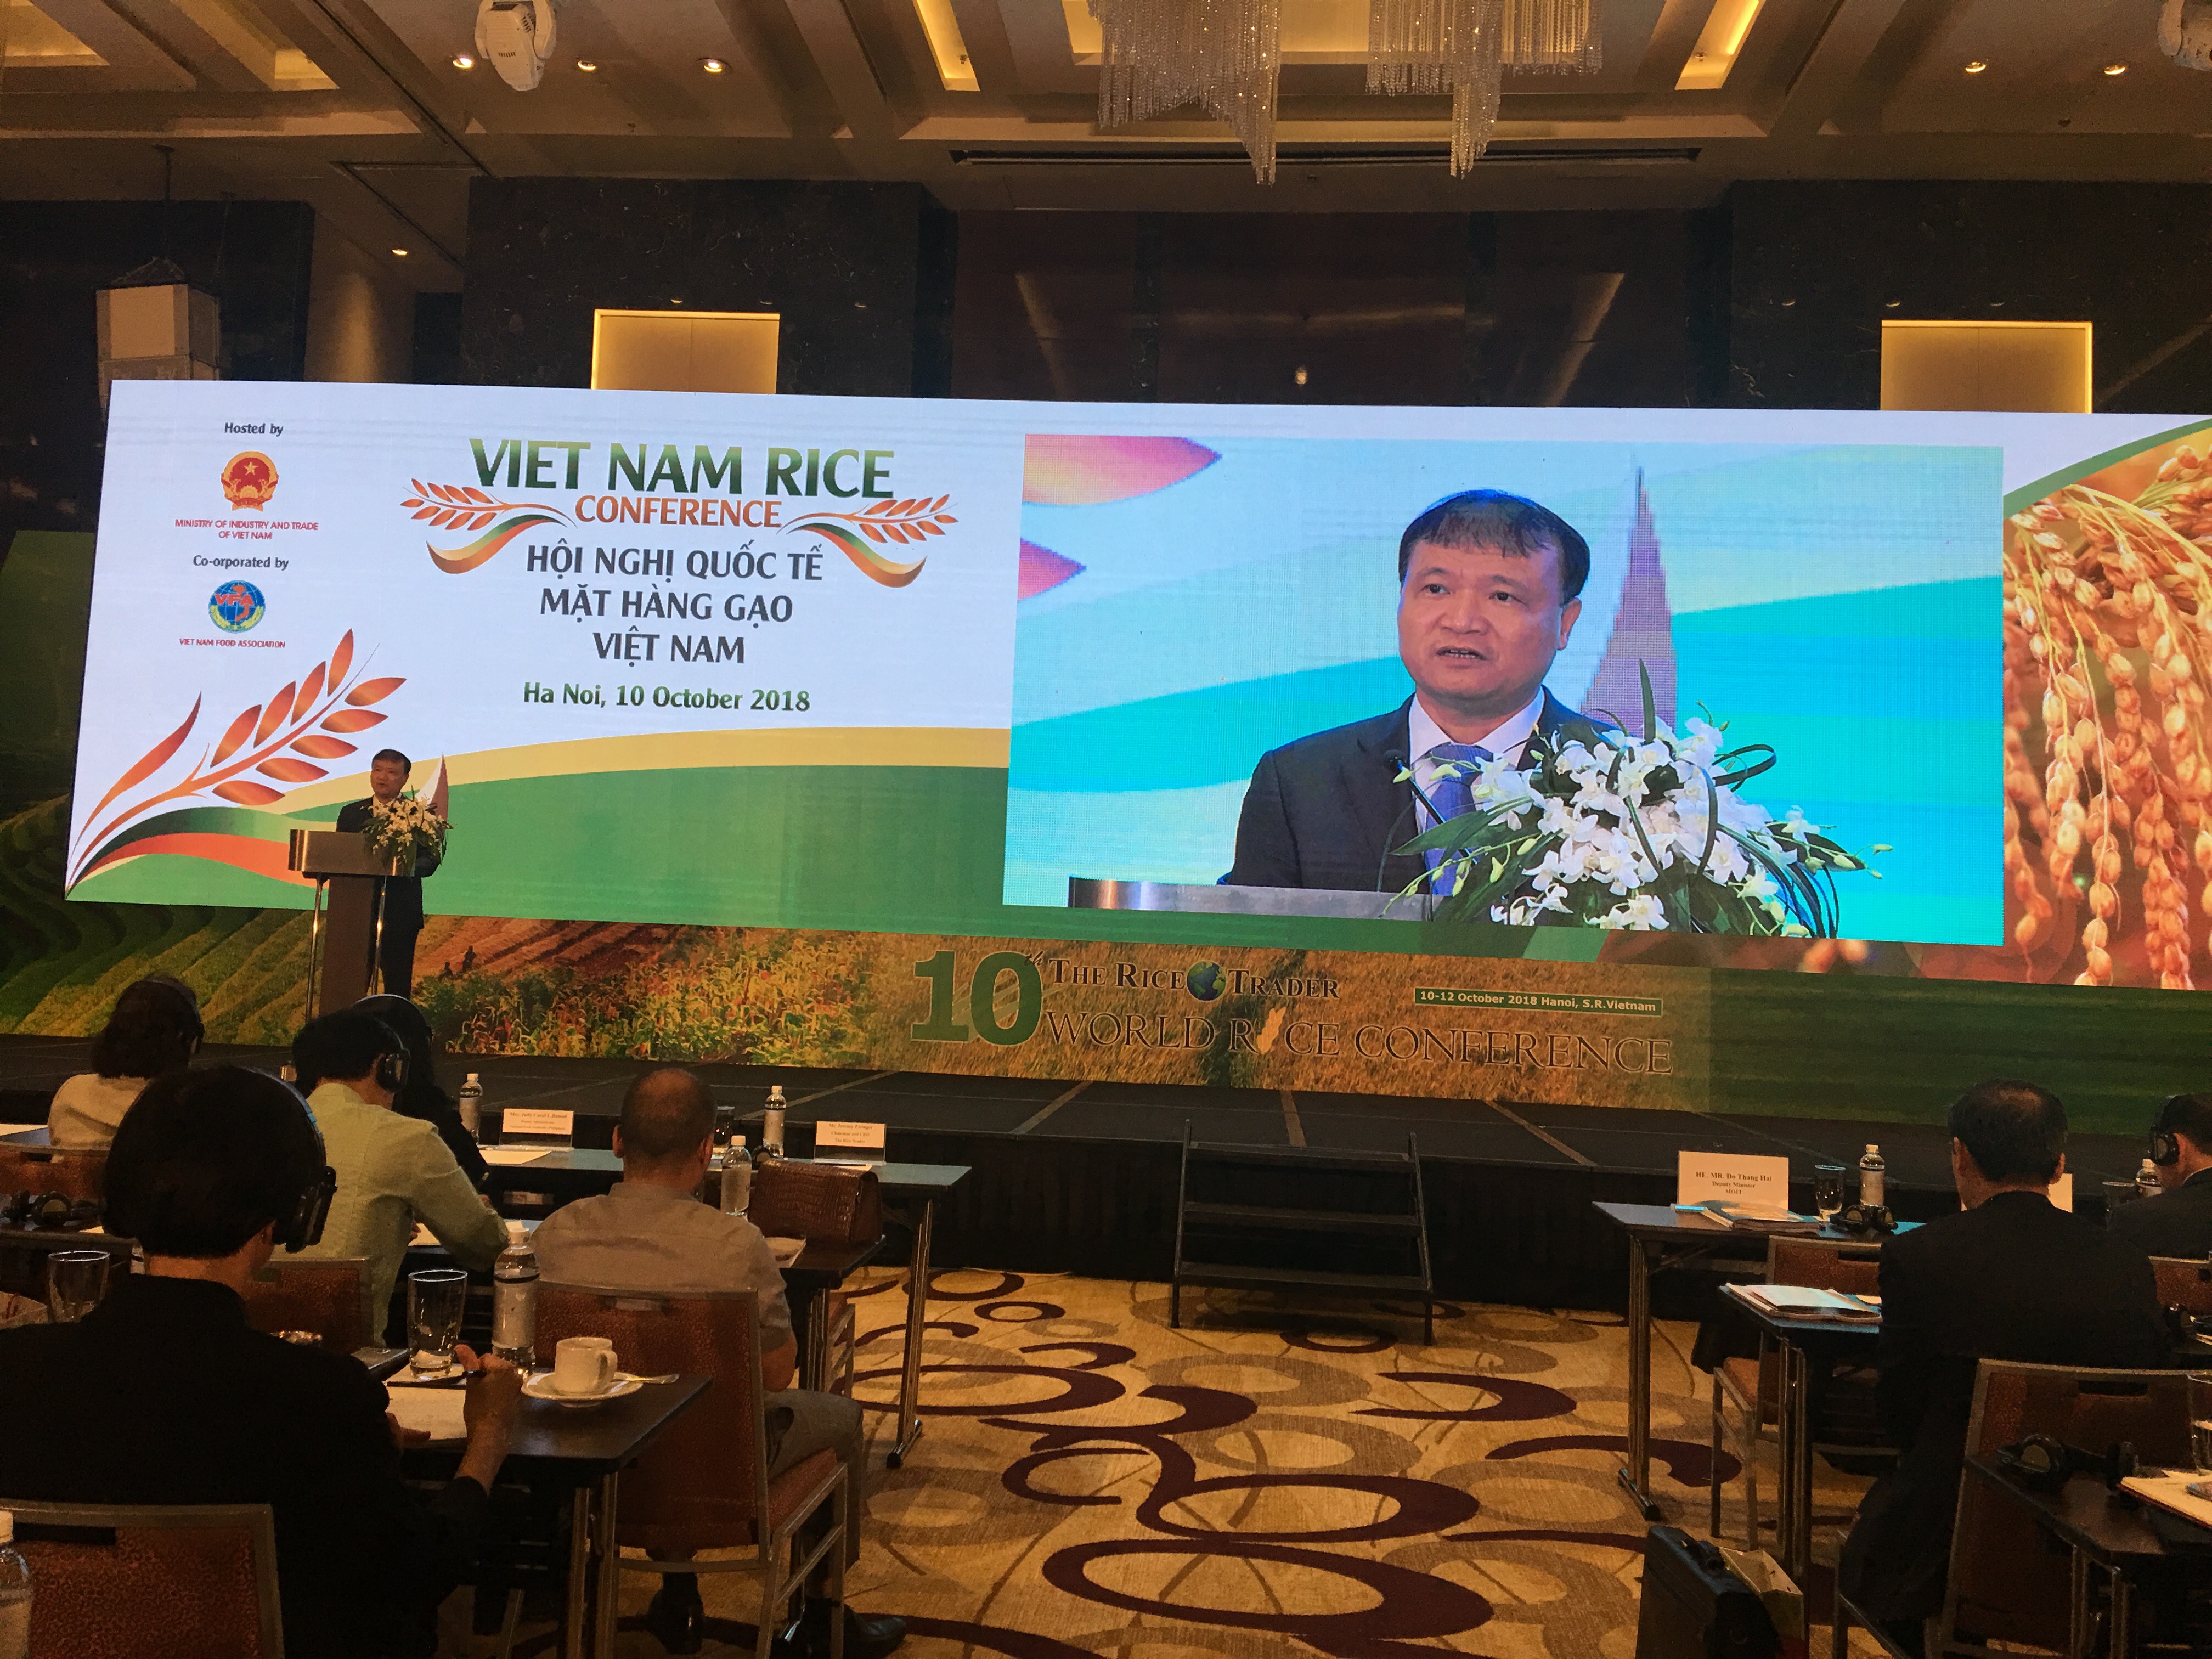 Theo Thứ trưởng Đỗ Thắng Hải các sản phẩm gạo của Việt Nam đã có những bước phát triển về chất lượng, đa dạng về chủng loại, có khả năng đáp ứng được mọi yêu cầu của khách hàng.